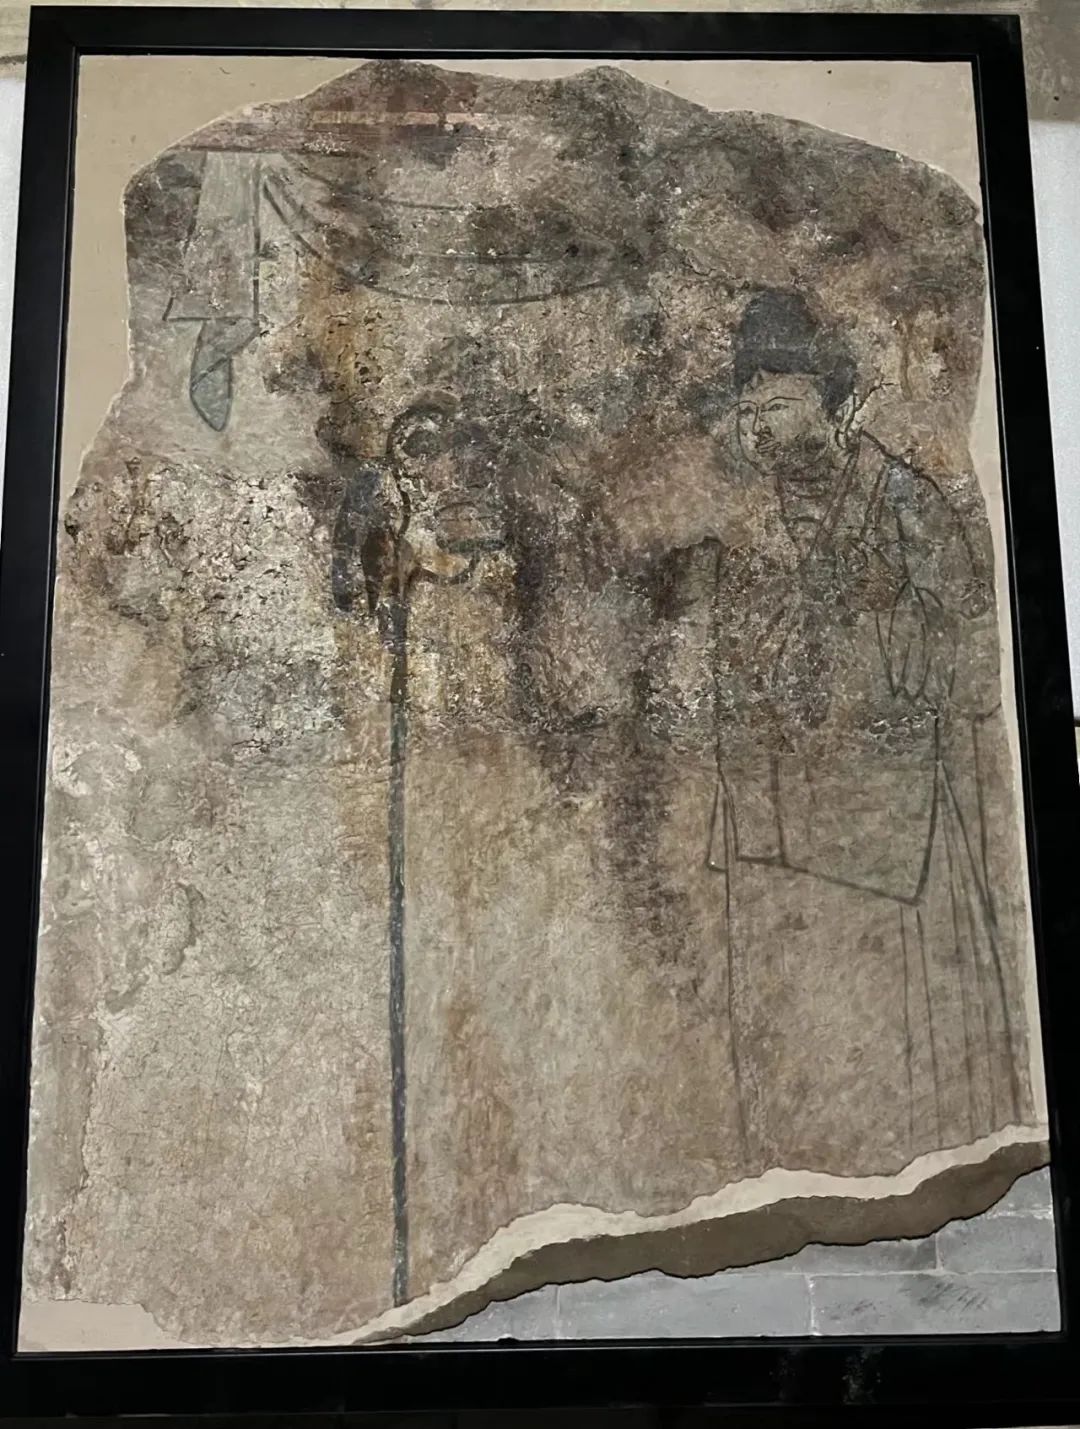 固安辽代古墓精美壁画呈现千年艺术和时代风格401 作者:固安攻略 帖子ID:68589 固安,辽代,古墓,精美,壁画